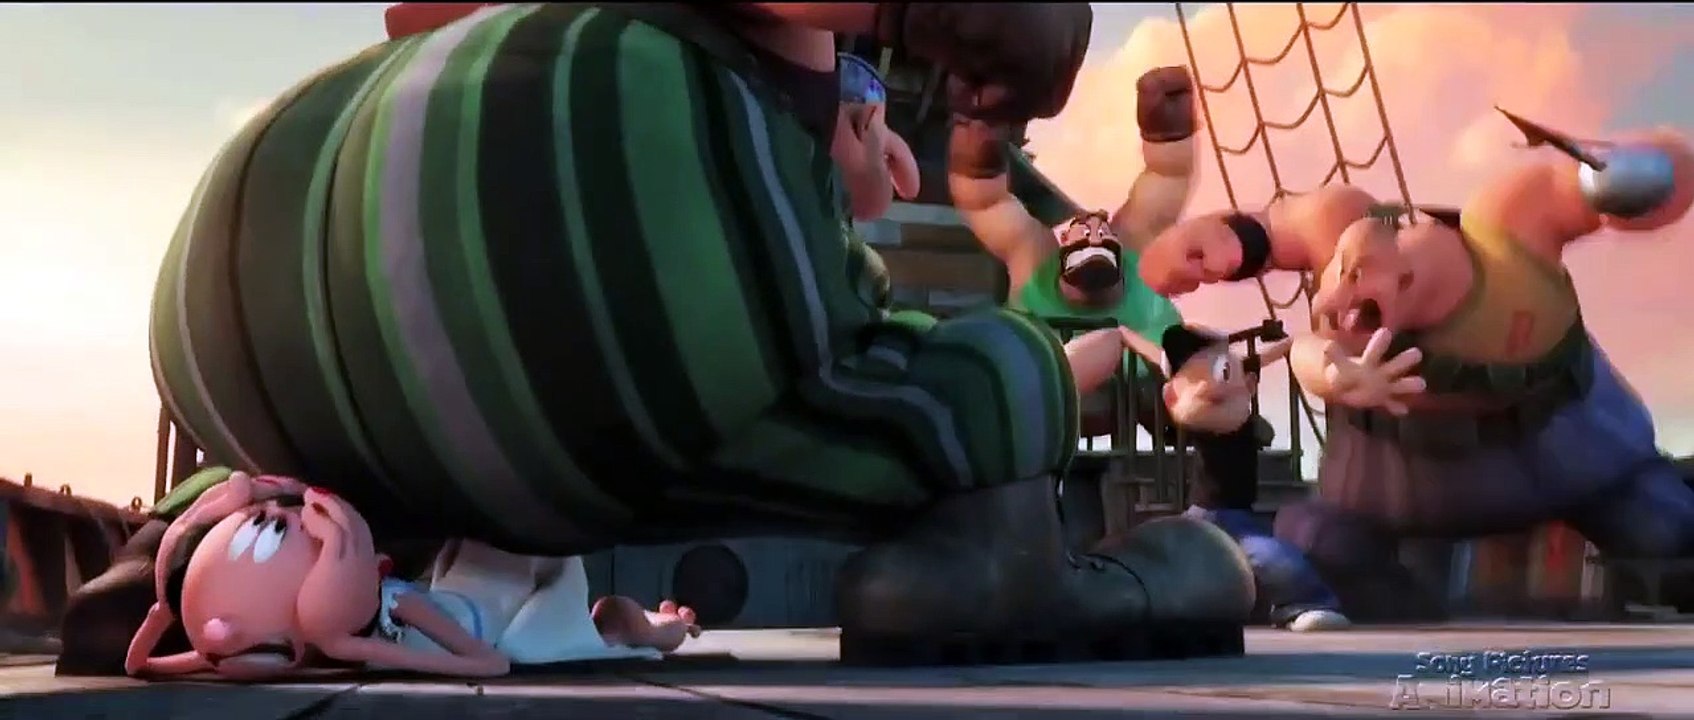 Popeye SNEAK PEEK 1 (2016) - Animated Movie HD